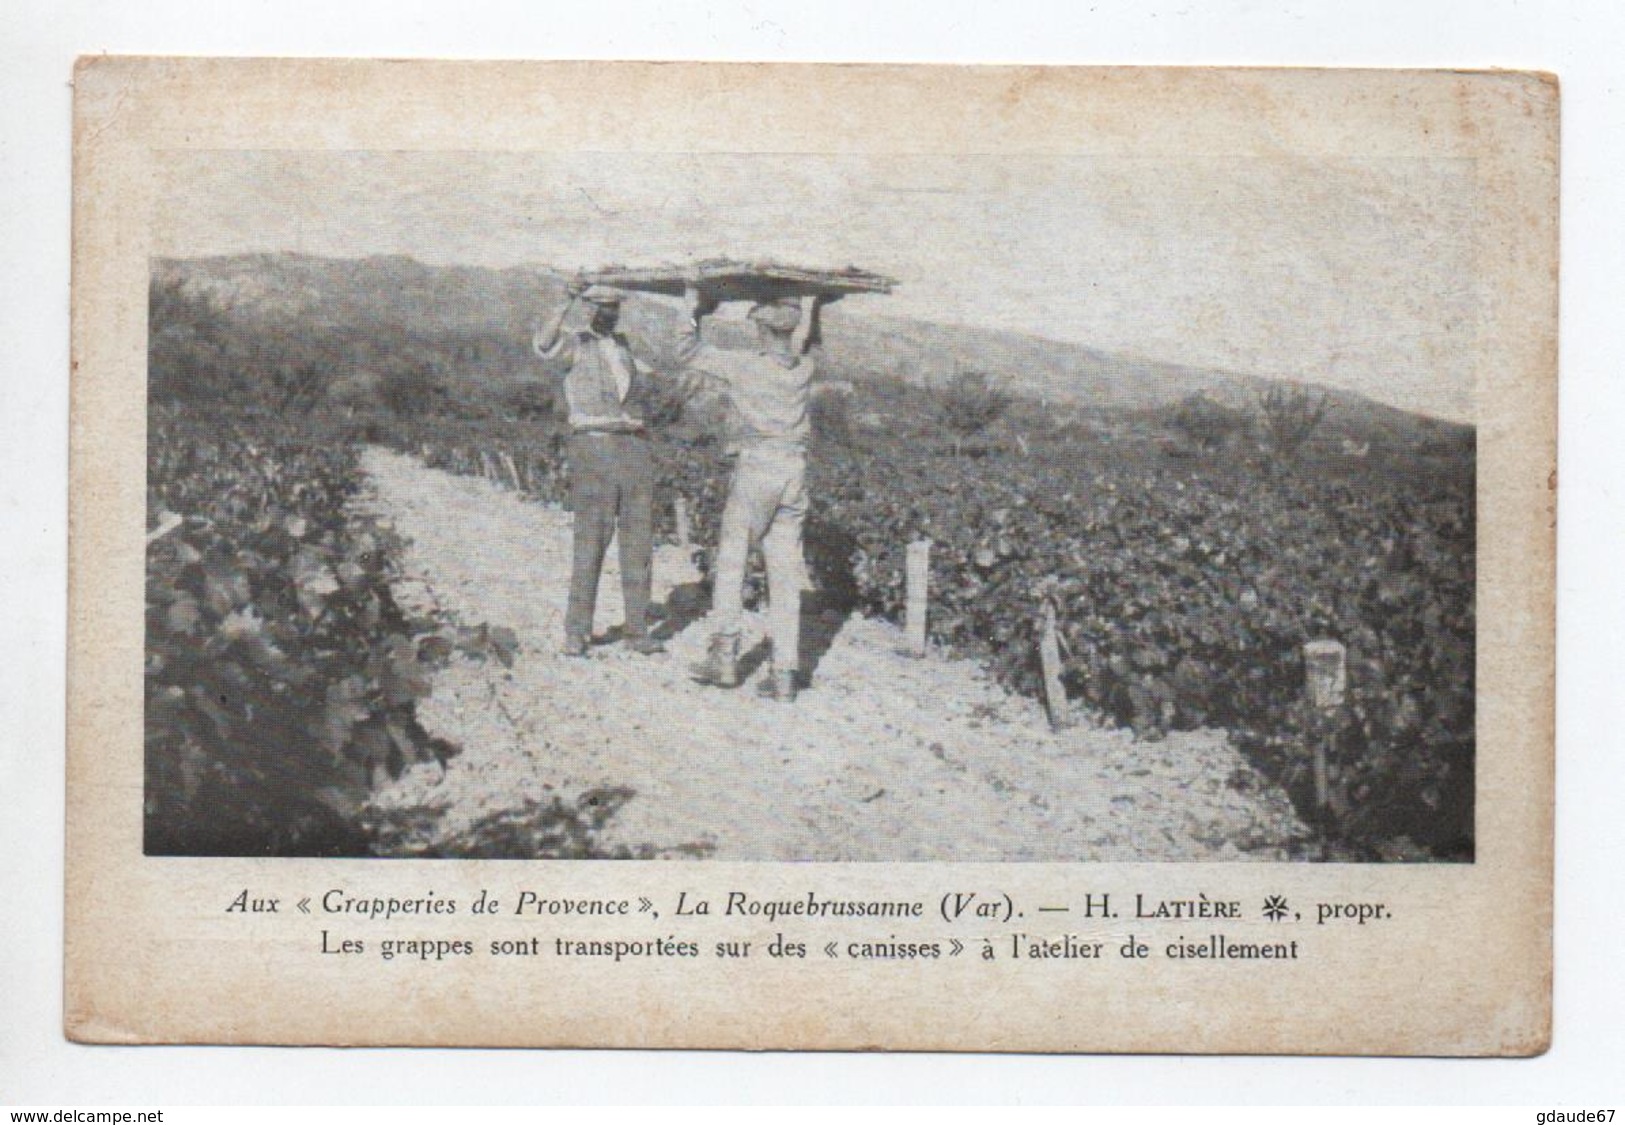 LA ROQUEBRUSSANNE (83) - AUX GRAPPERIES DE PROVENCE H. LATIERE - LES GRAPPES SONT TRANSPORTEES SUR DES CANISSES - La Roquebrussanne